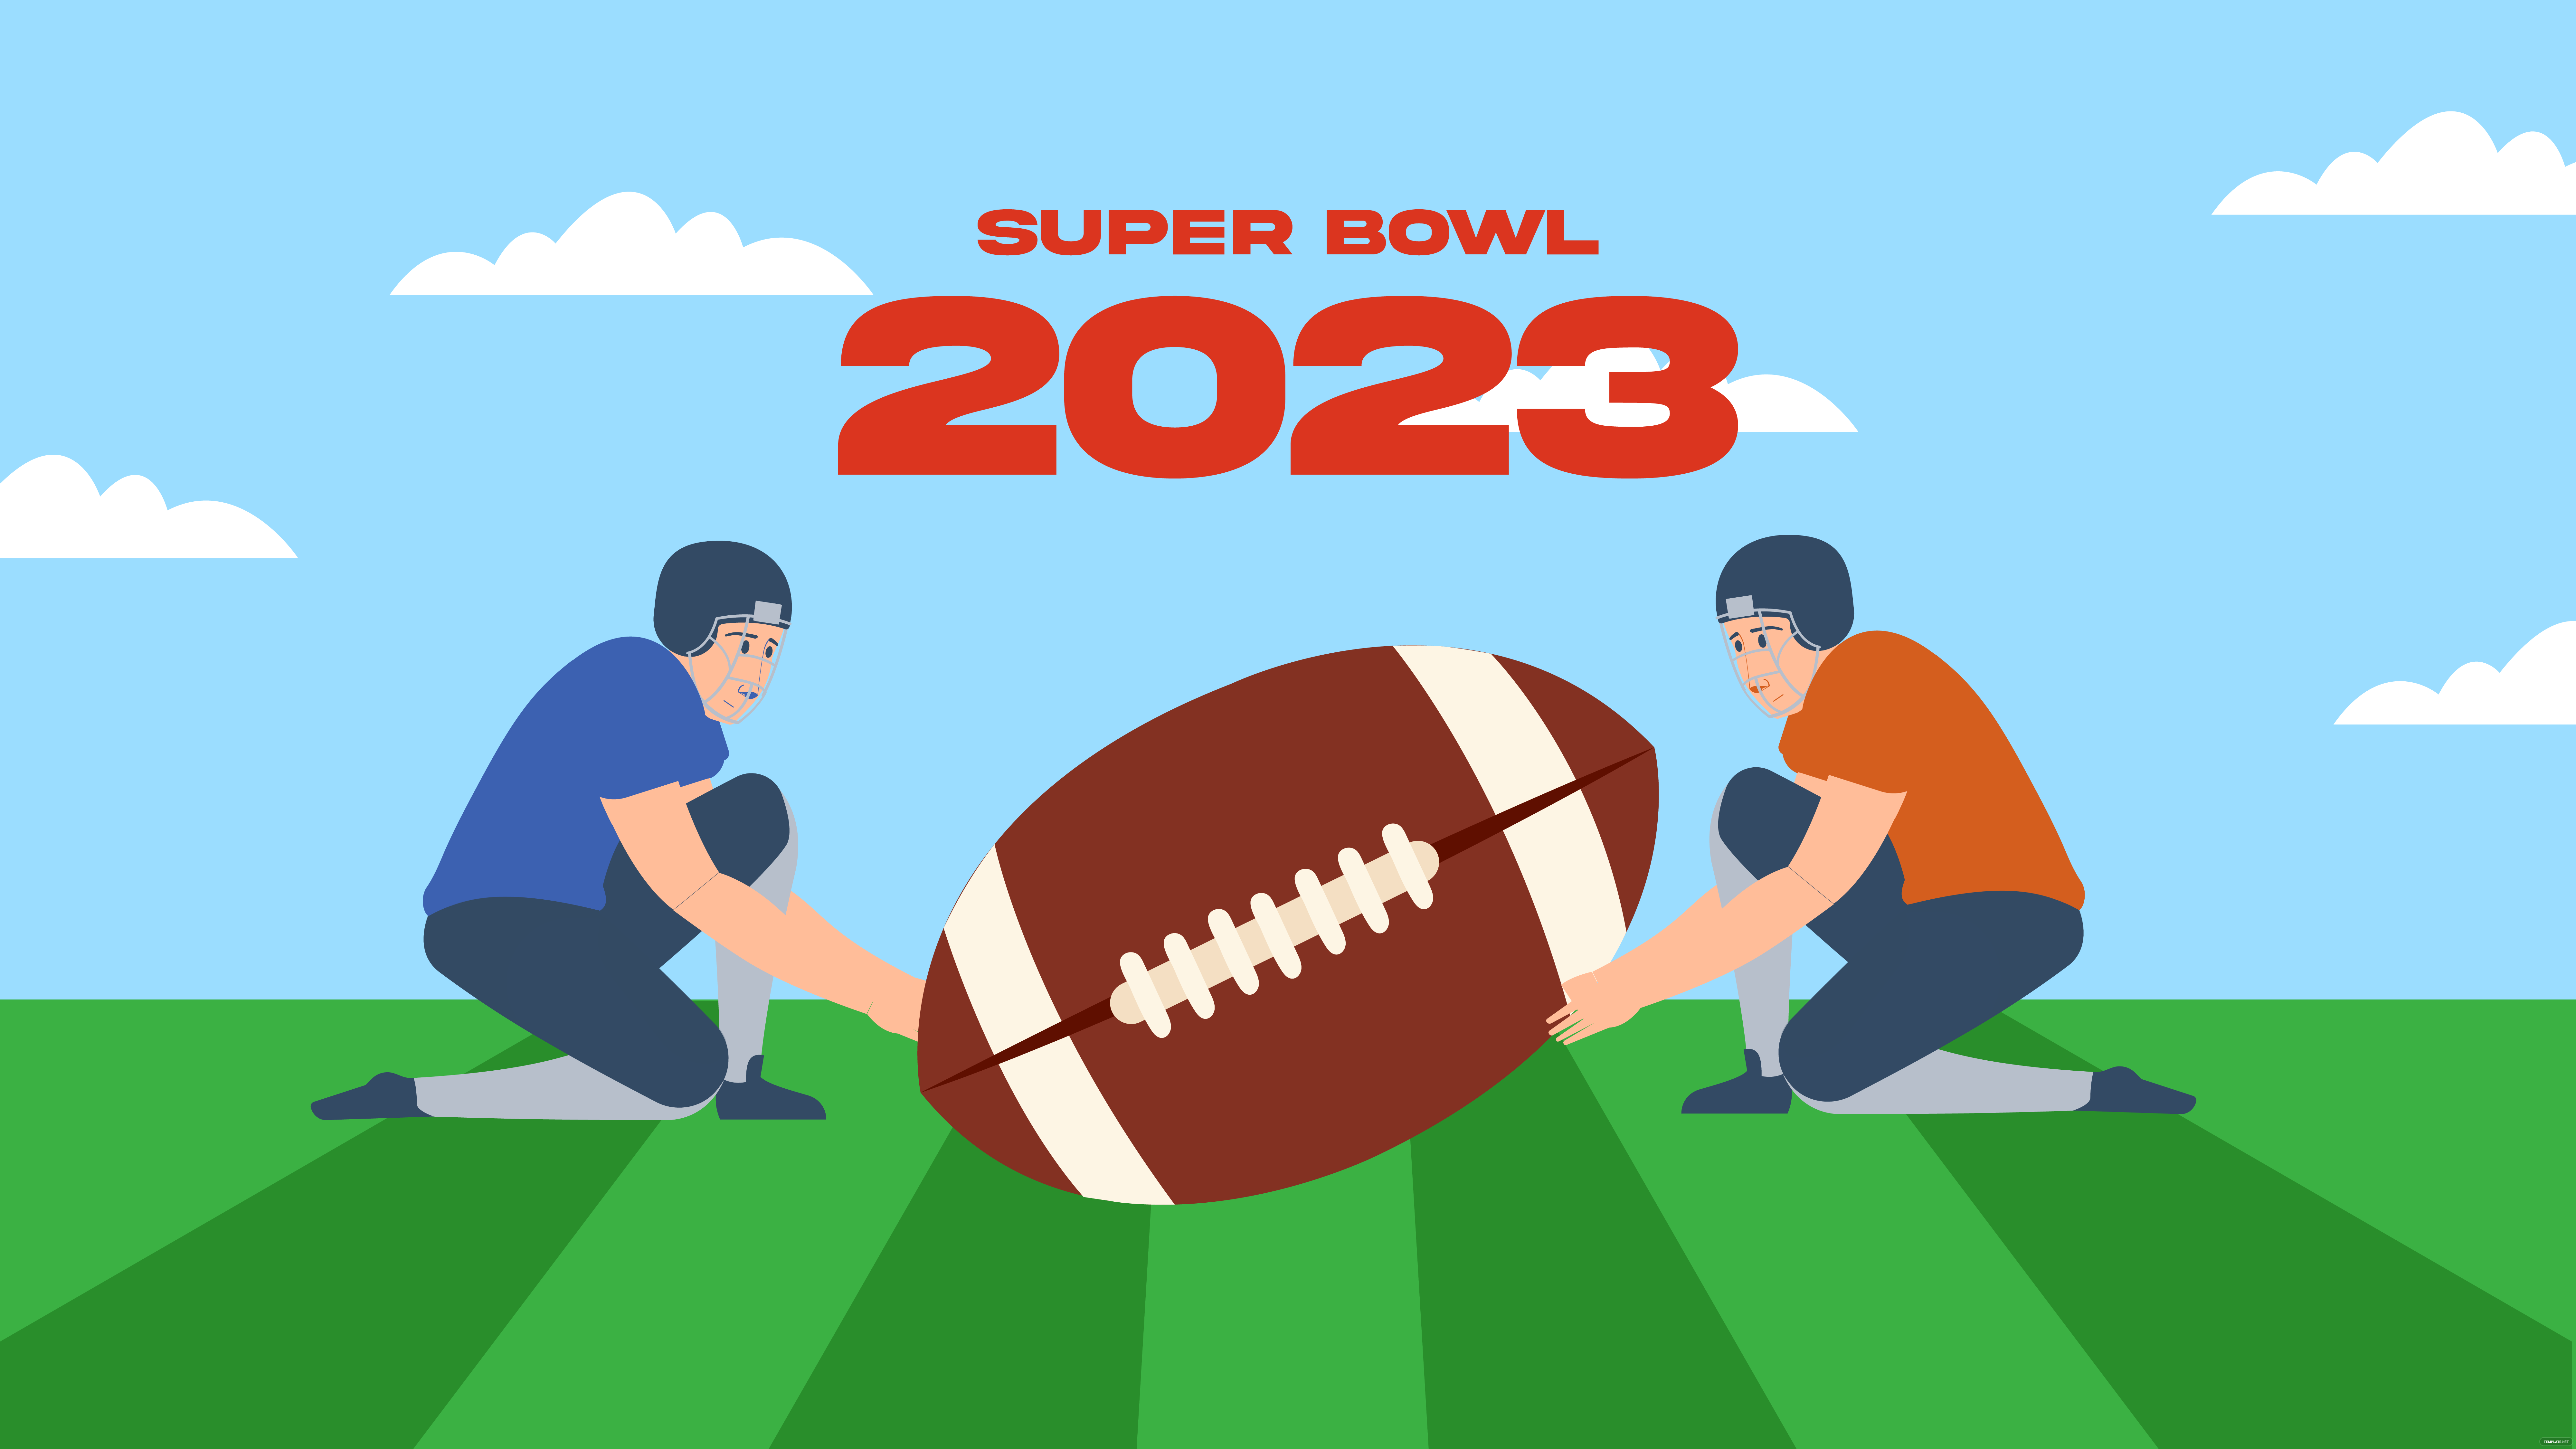 Super Bowl 2023 Background, Illustrator, JPG, PSD, PNG, PDF, SVG